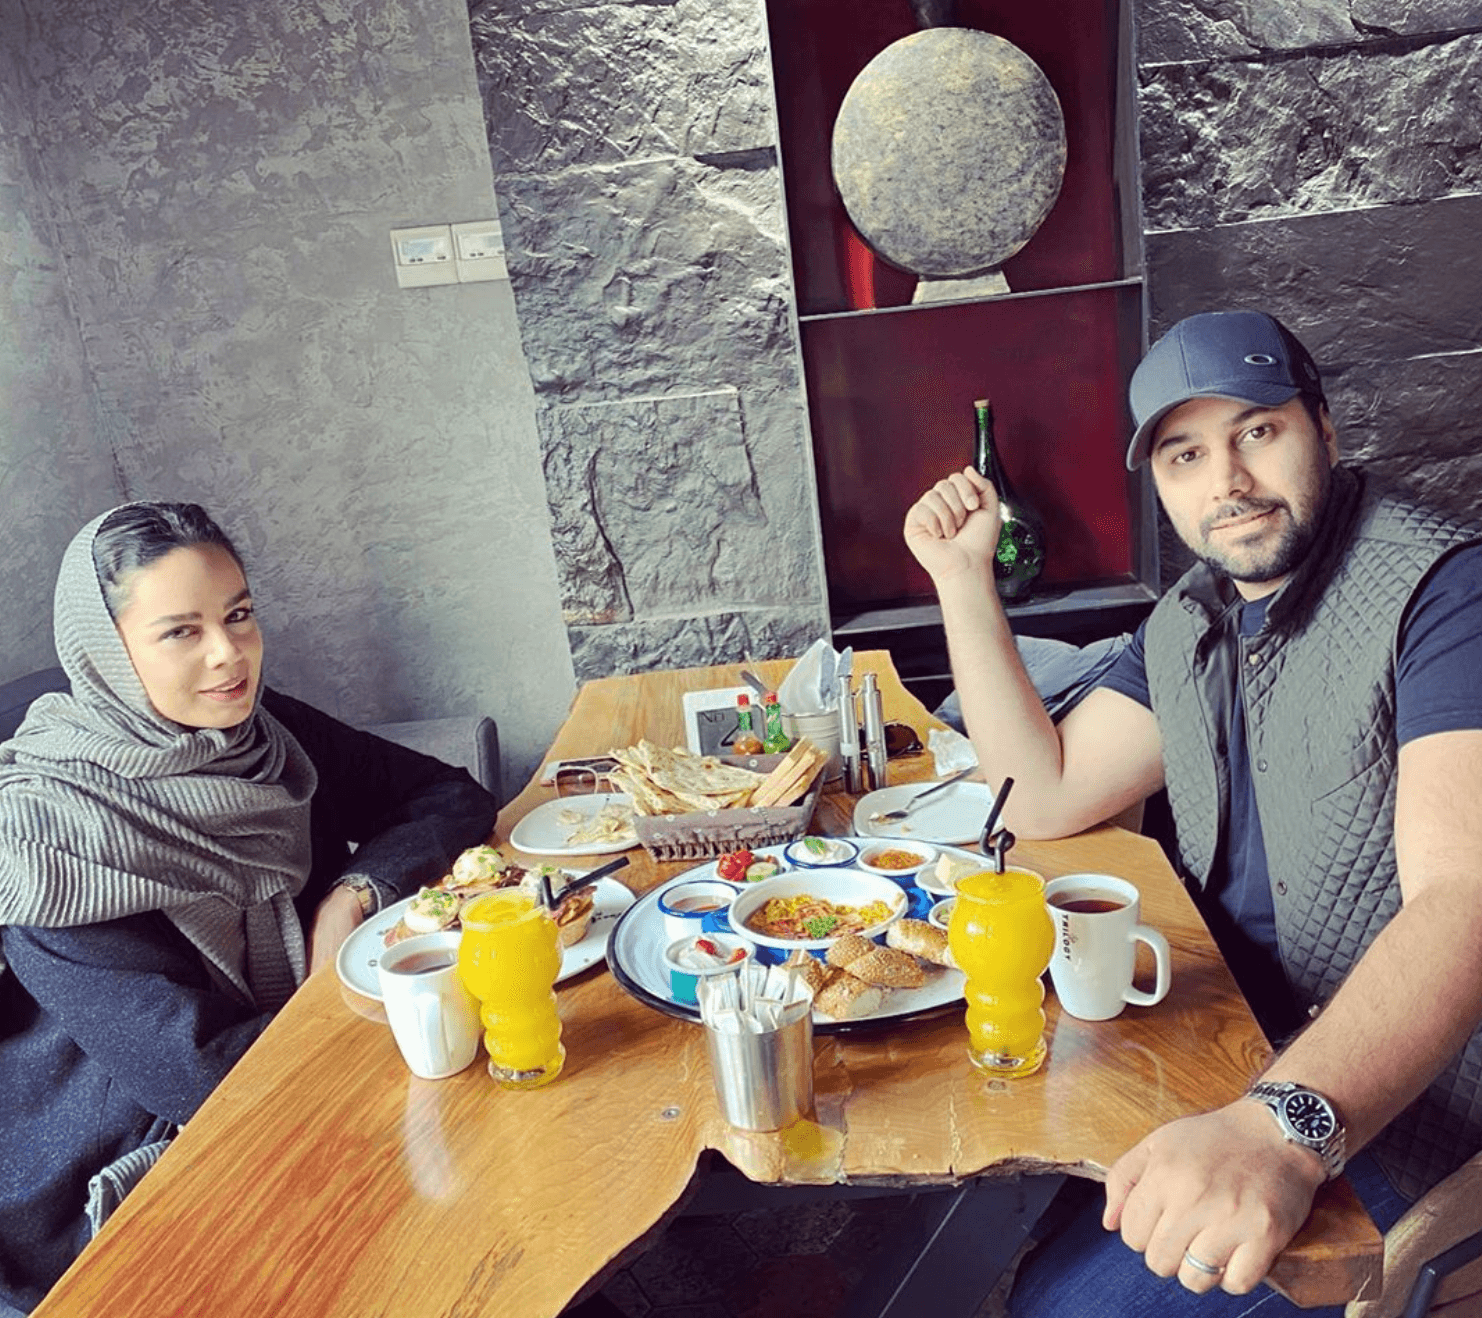 صبحانه لاکچری احسان خواجه امیری و همسرش در قرنطینه + عکس 